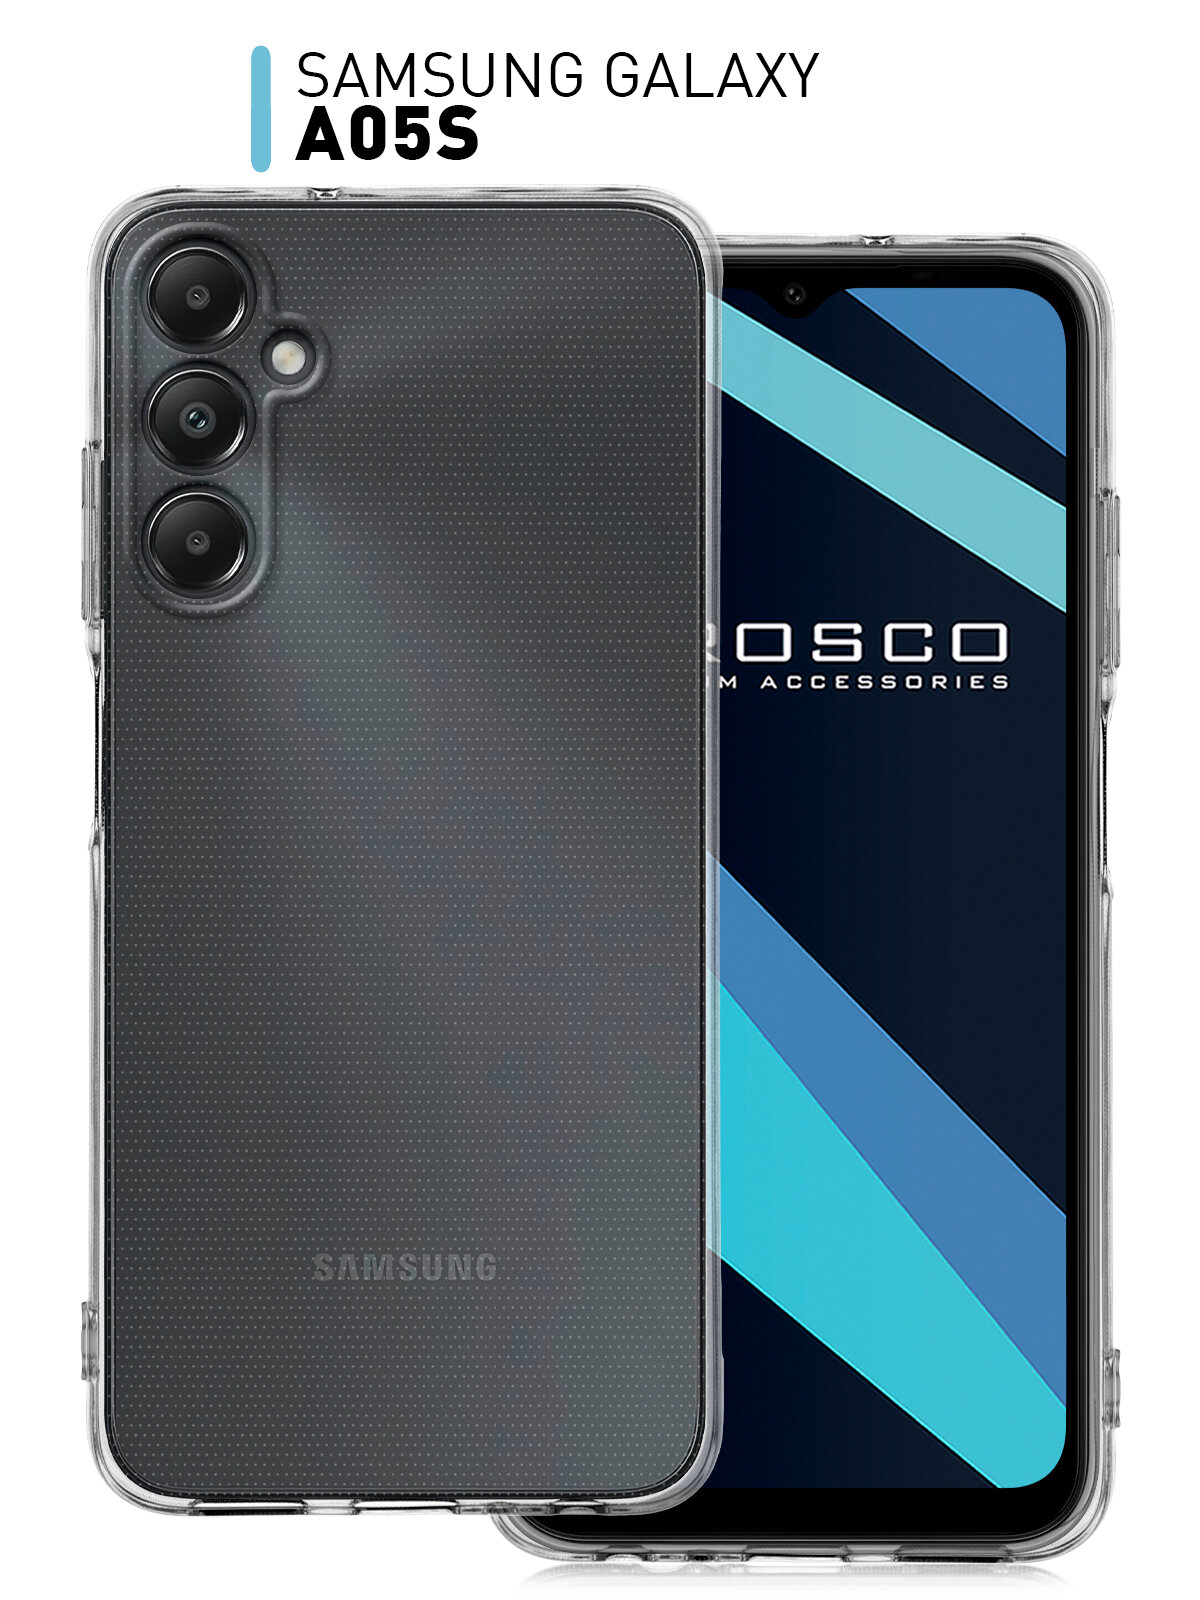 Чехол ROSCO для Samsung Galaxy A05s (Самсунг Галакси А05с) с защитой блока камеры силиконовый чехол гибкий прозрачный чехол